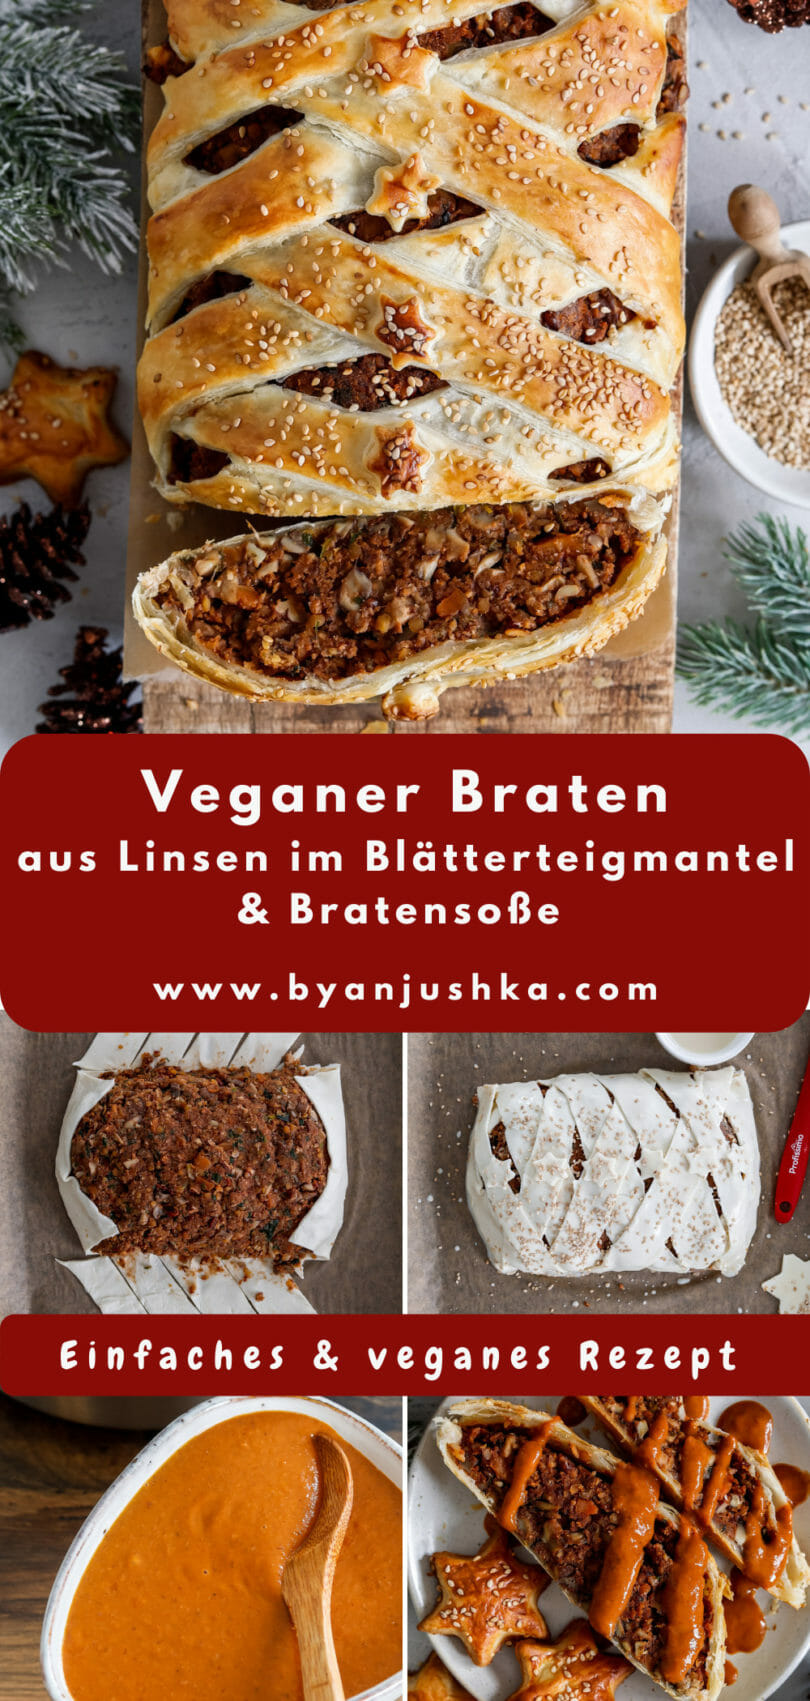 Collage für das Rezept "Veganer Braten im Blätterteigmantel mit Bratensoße" zum teilen auf Pinterest